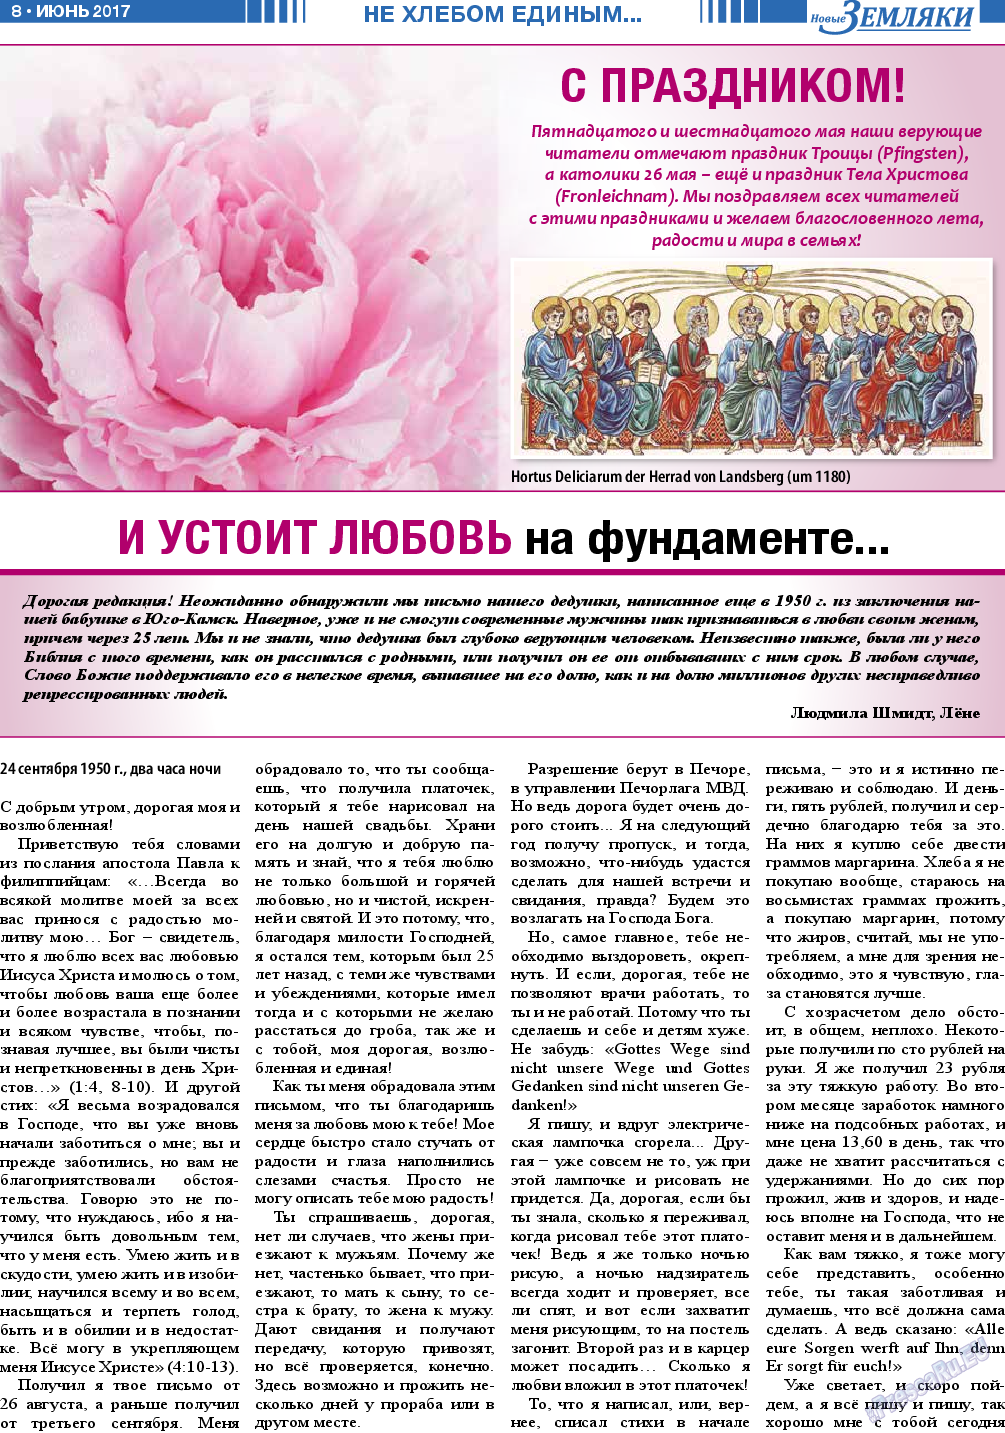 Новые Земляки, газета. 2017 №6 стр.8